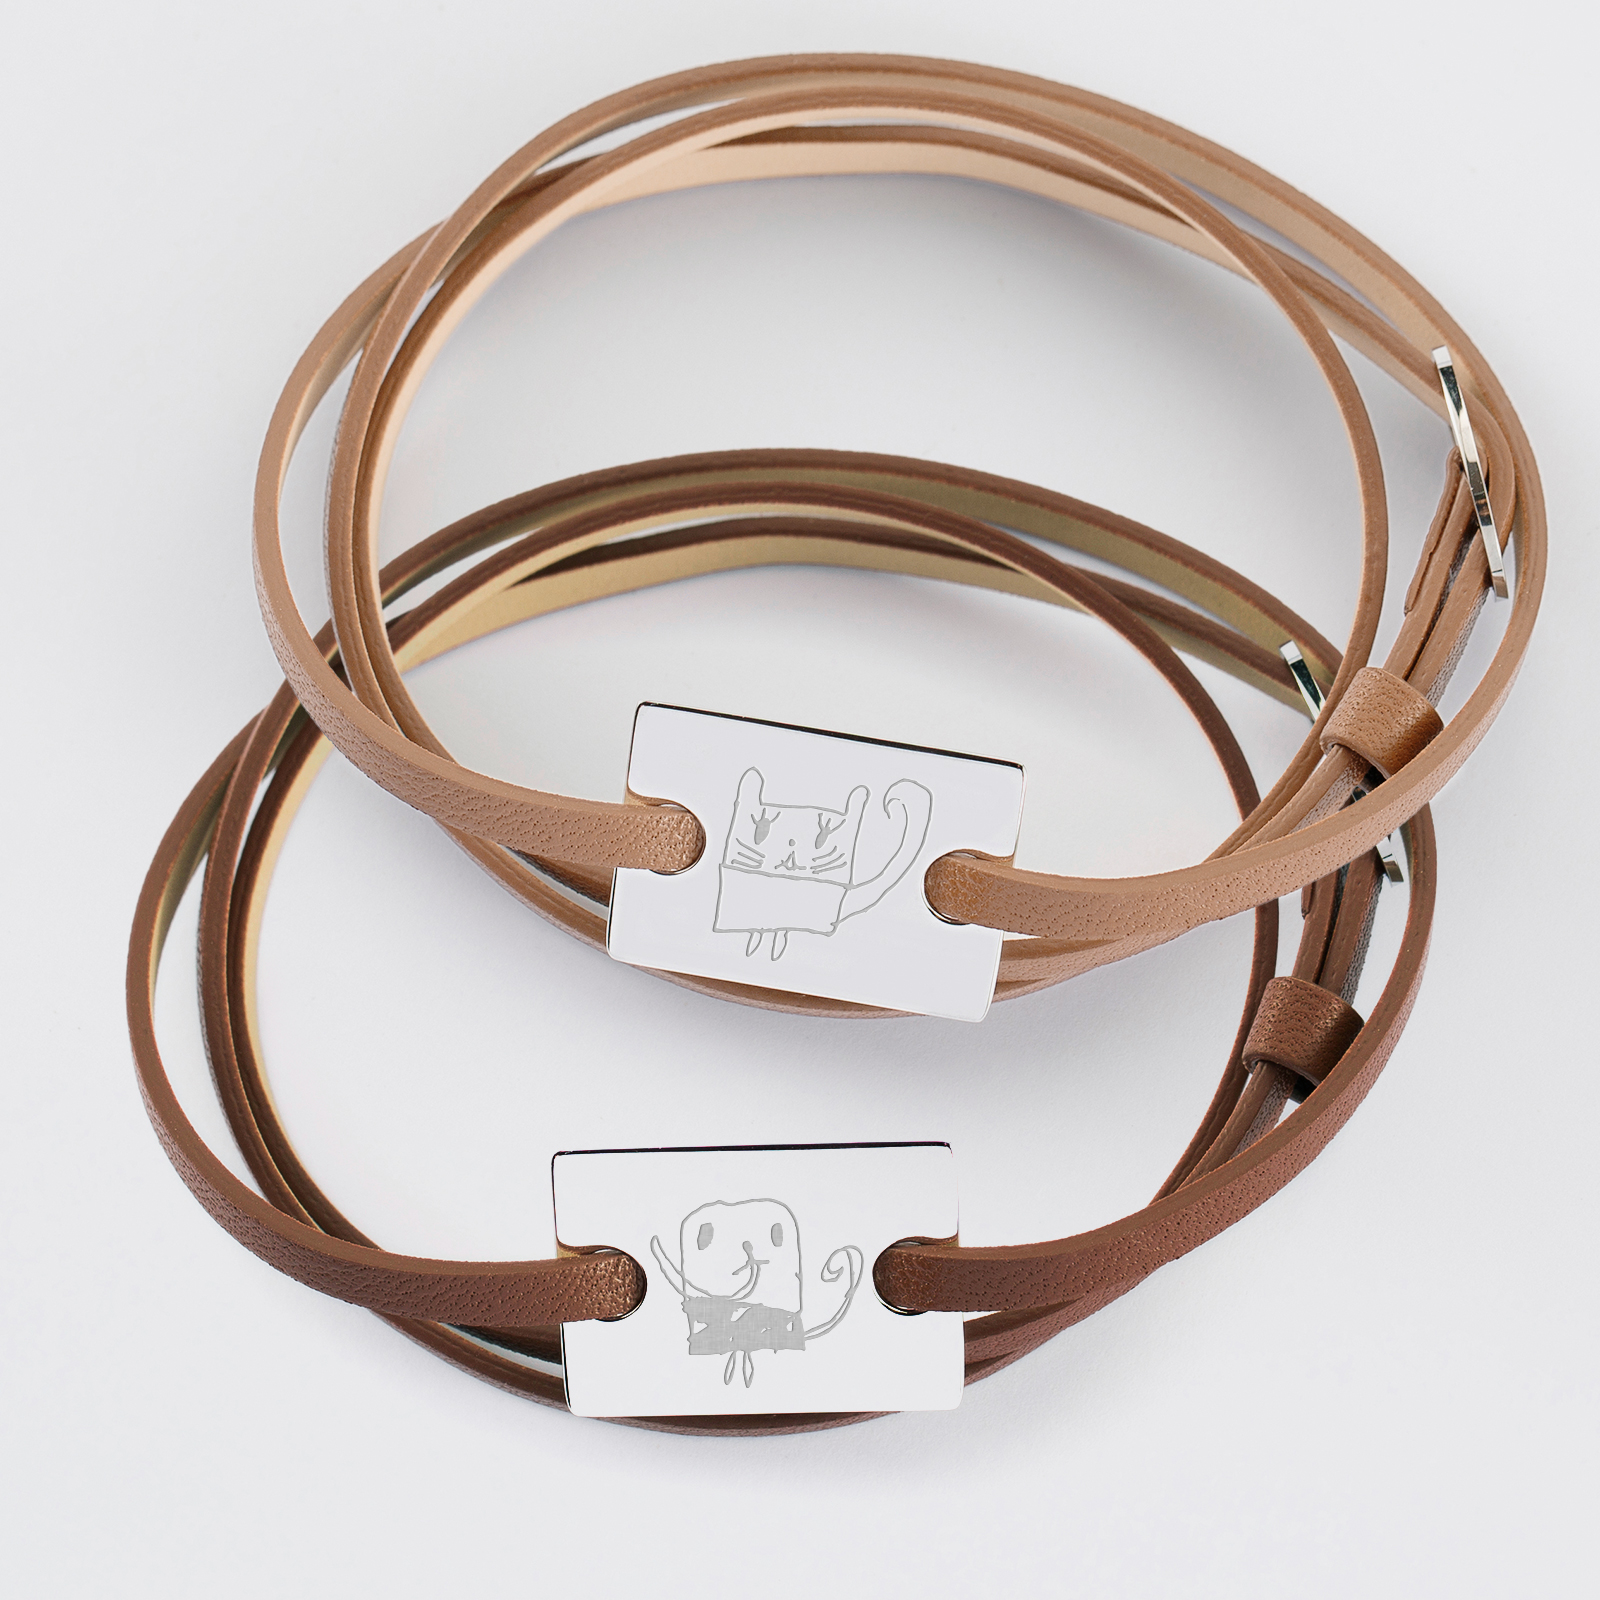 Duo de bracelets cuir personnalisés médailles gravée argent rectangle 2 trous 23x16 mm - dessins